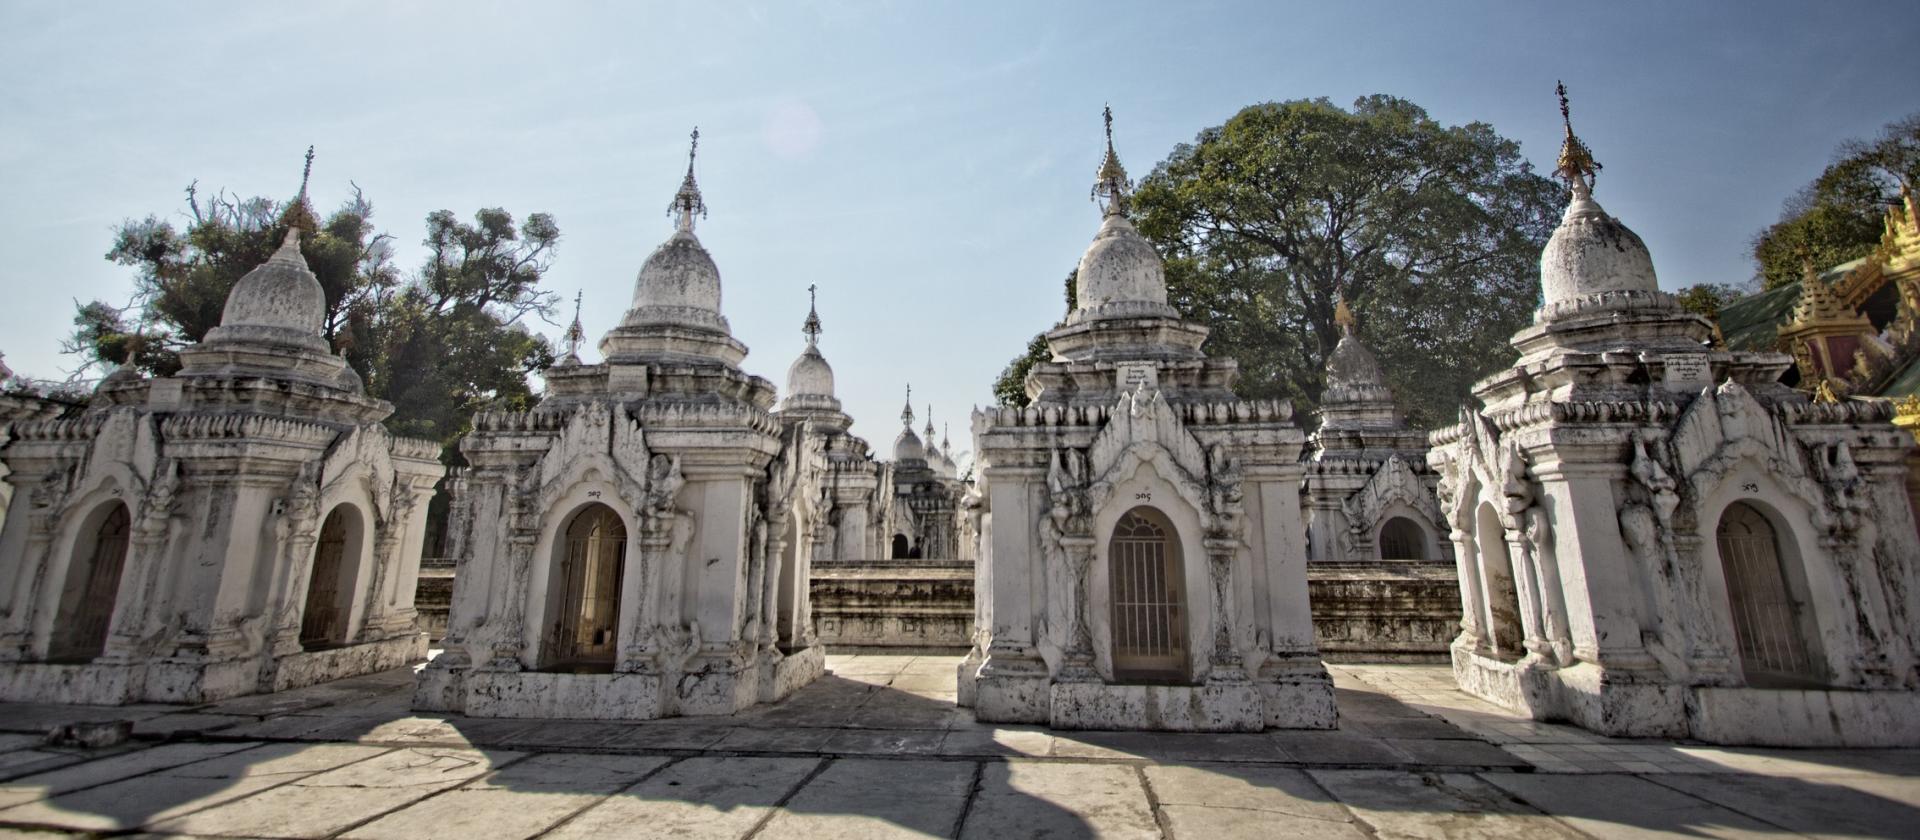 Świątynia Kuthodaw Paya w Mandalay